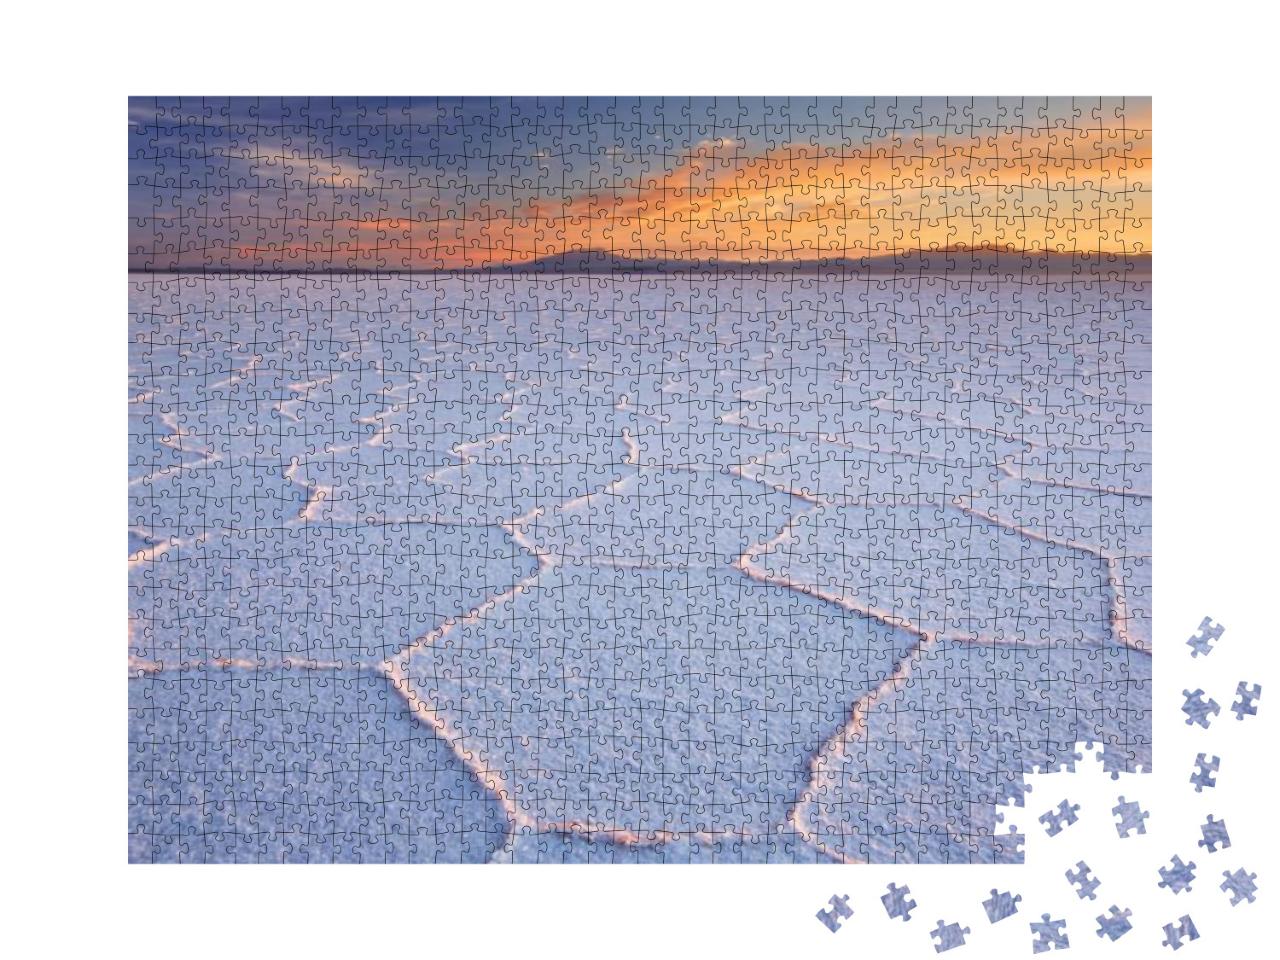 Puzzle 1000 Teile „Der größte Salzsee der Welt: Salar de Uyuni in Bolivien“